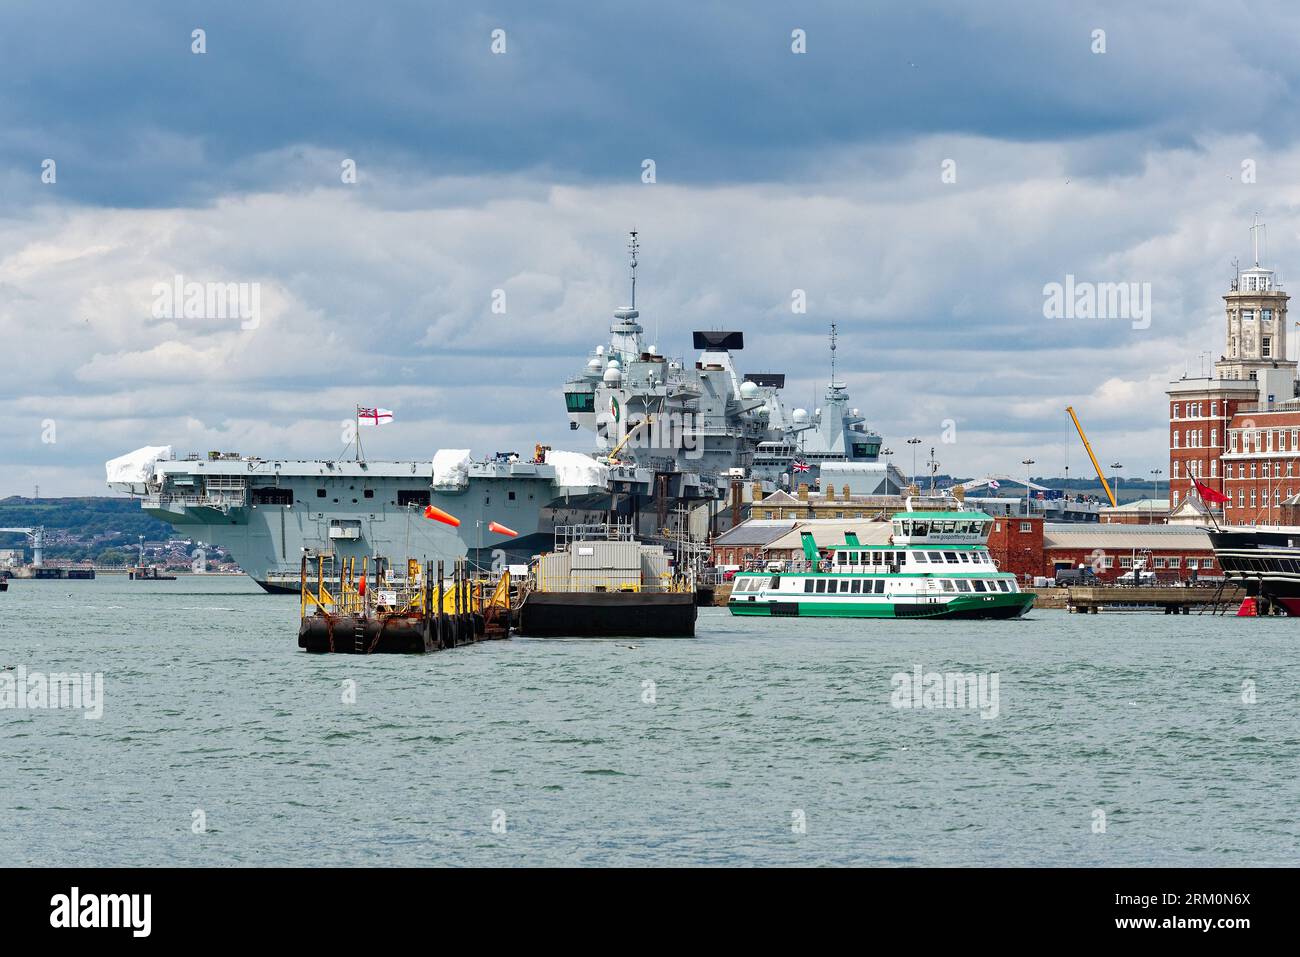 La portaerei Prince of Wales ormeggiò nel porto di Portsmouth dopo essere tornata da estese riparazioni, Hampshire Inghilterra Regno Unito Foto Stock